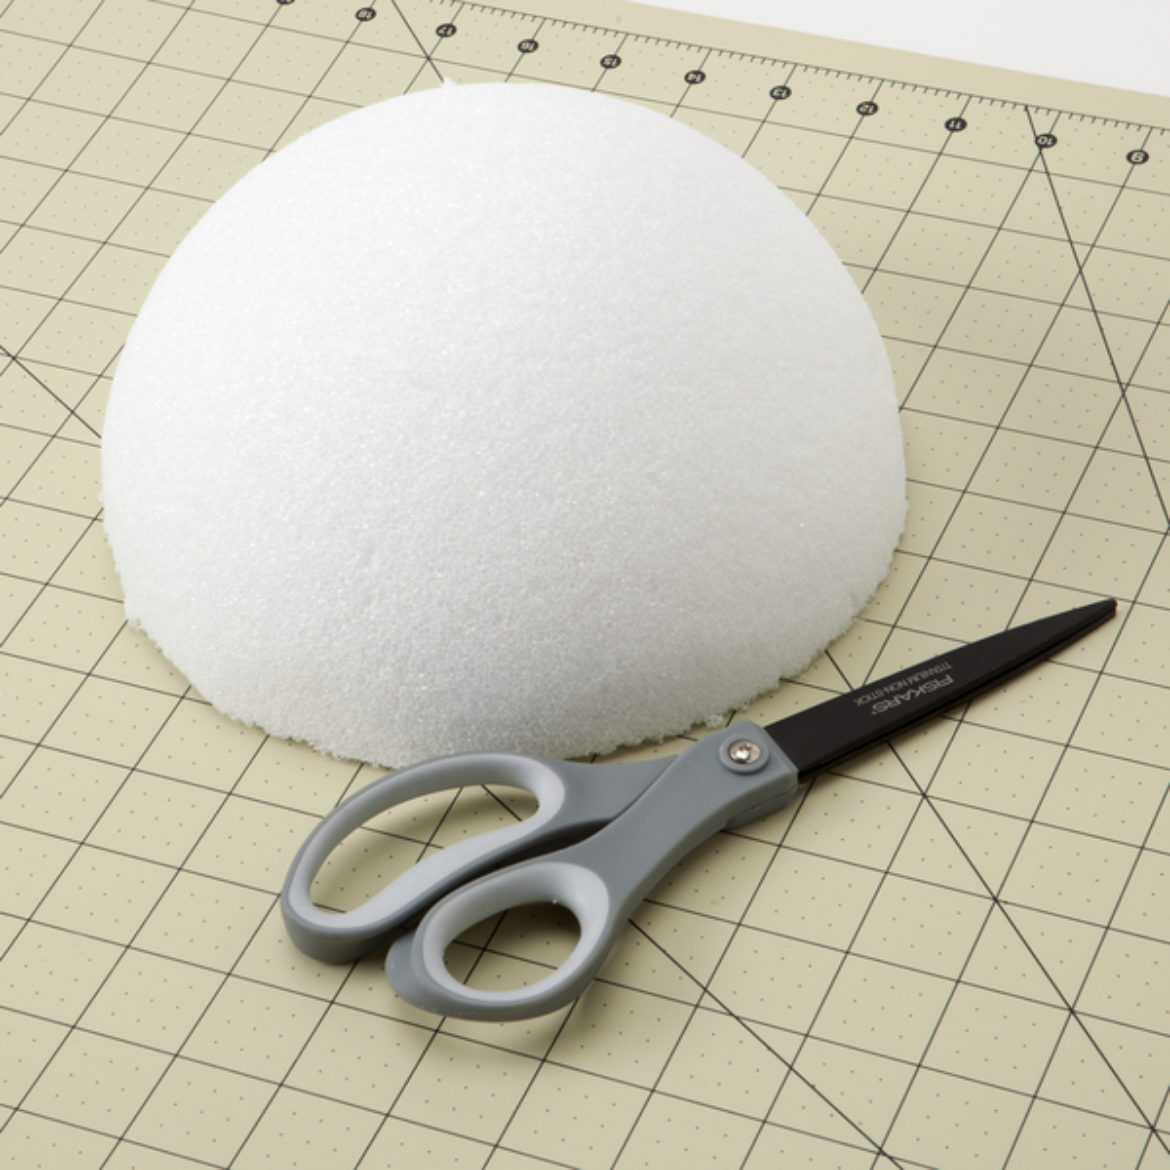 Cut foam ball in half to create a dome shape